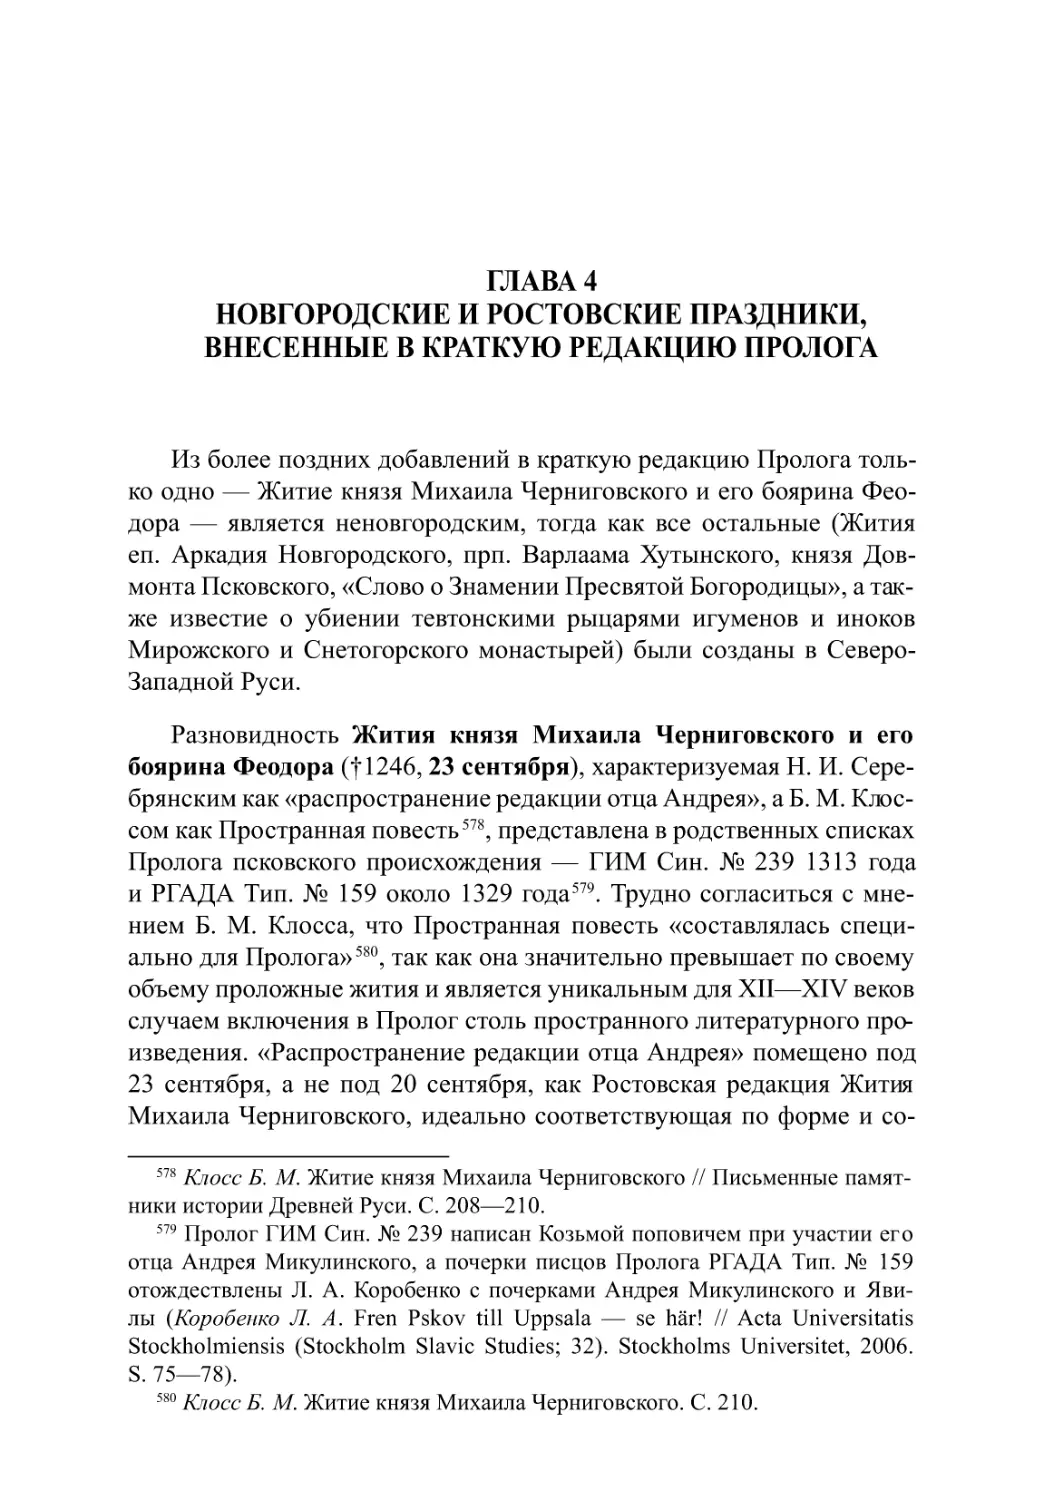 Глава 4. Новгородские и ростовские праздники,внесенные в краткую редакцию Пролога